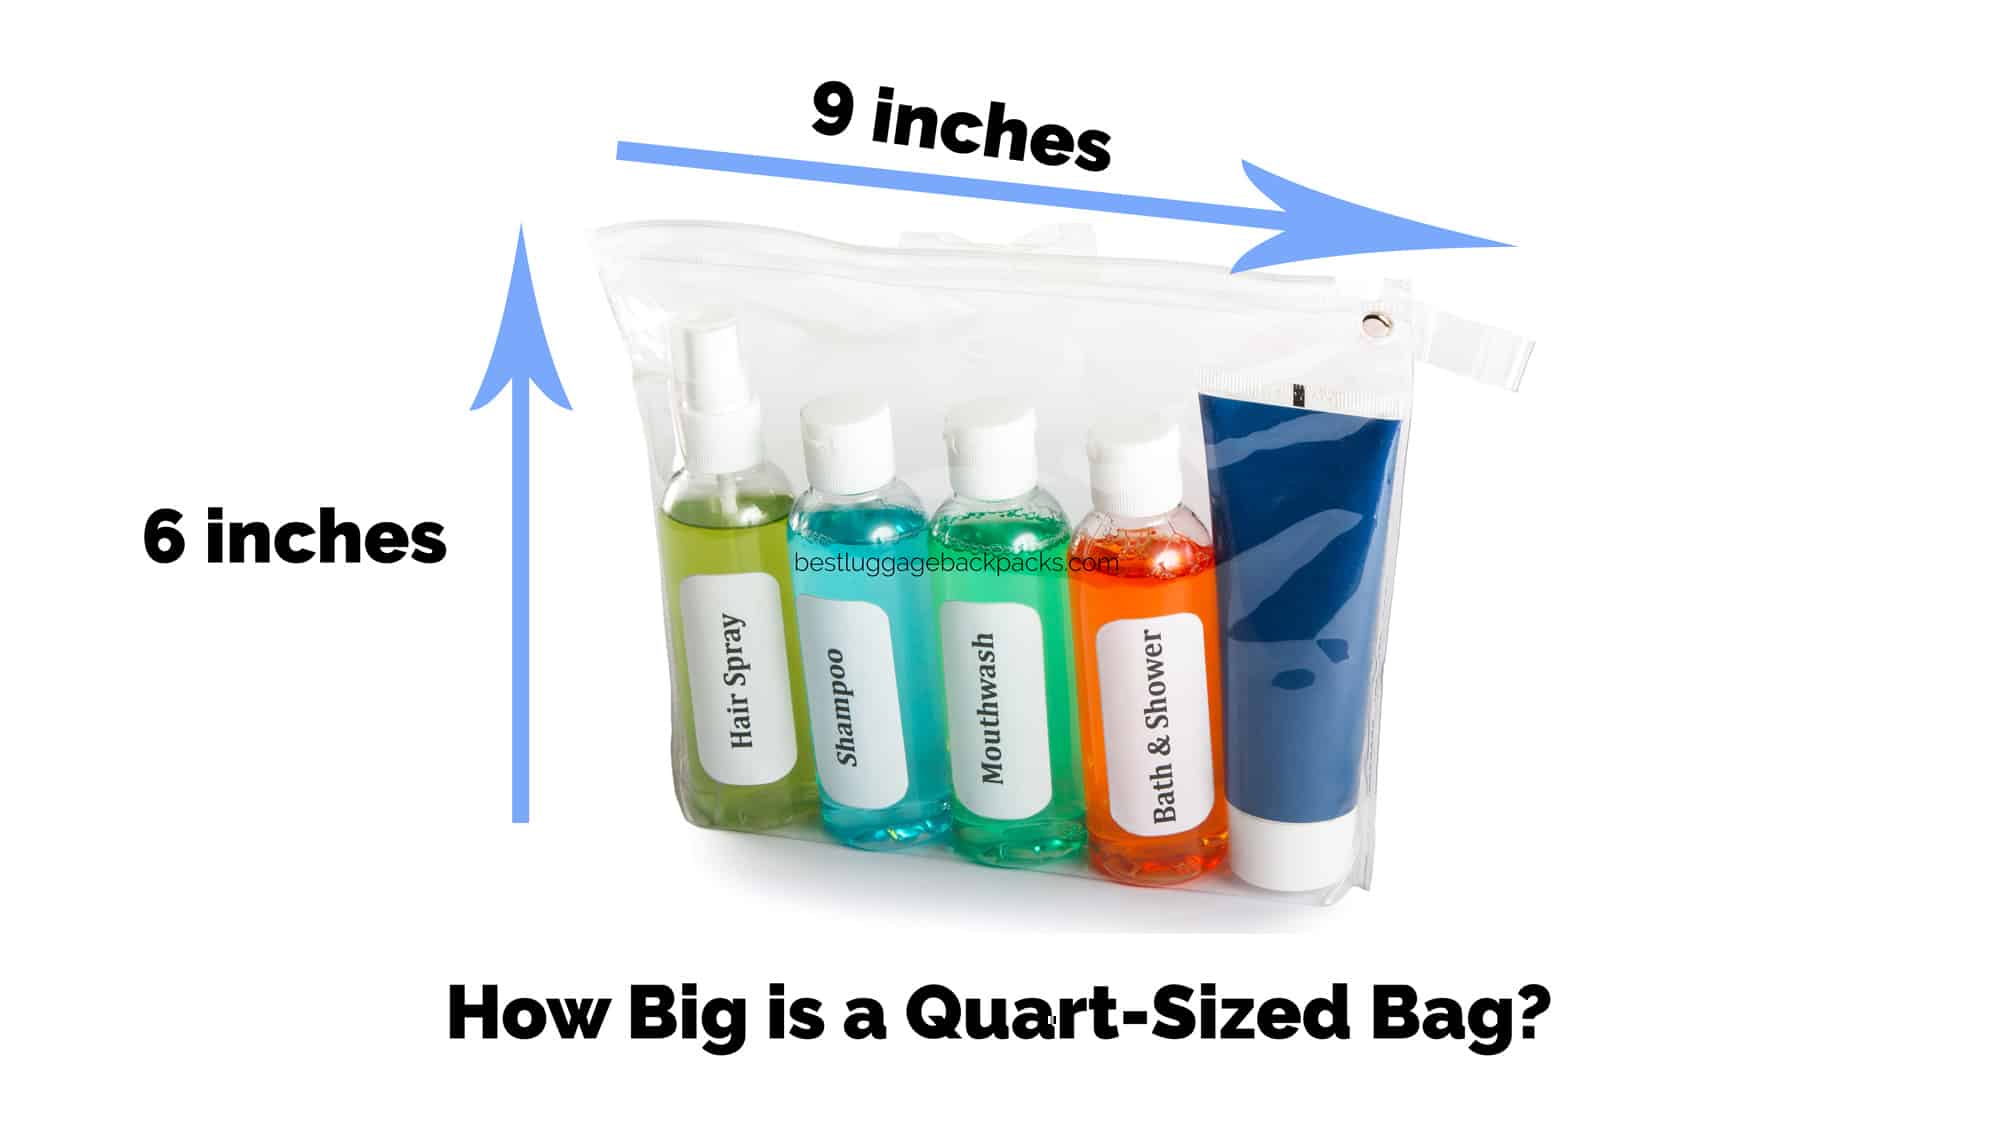 How Big is a Quart-Sized Bag?